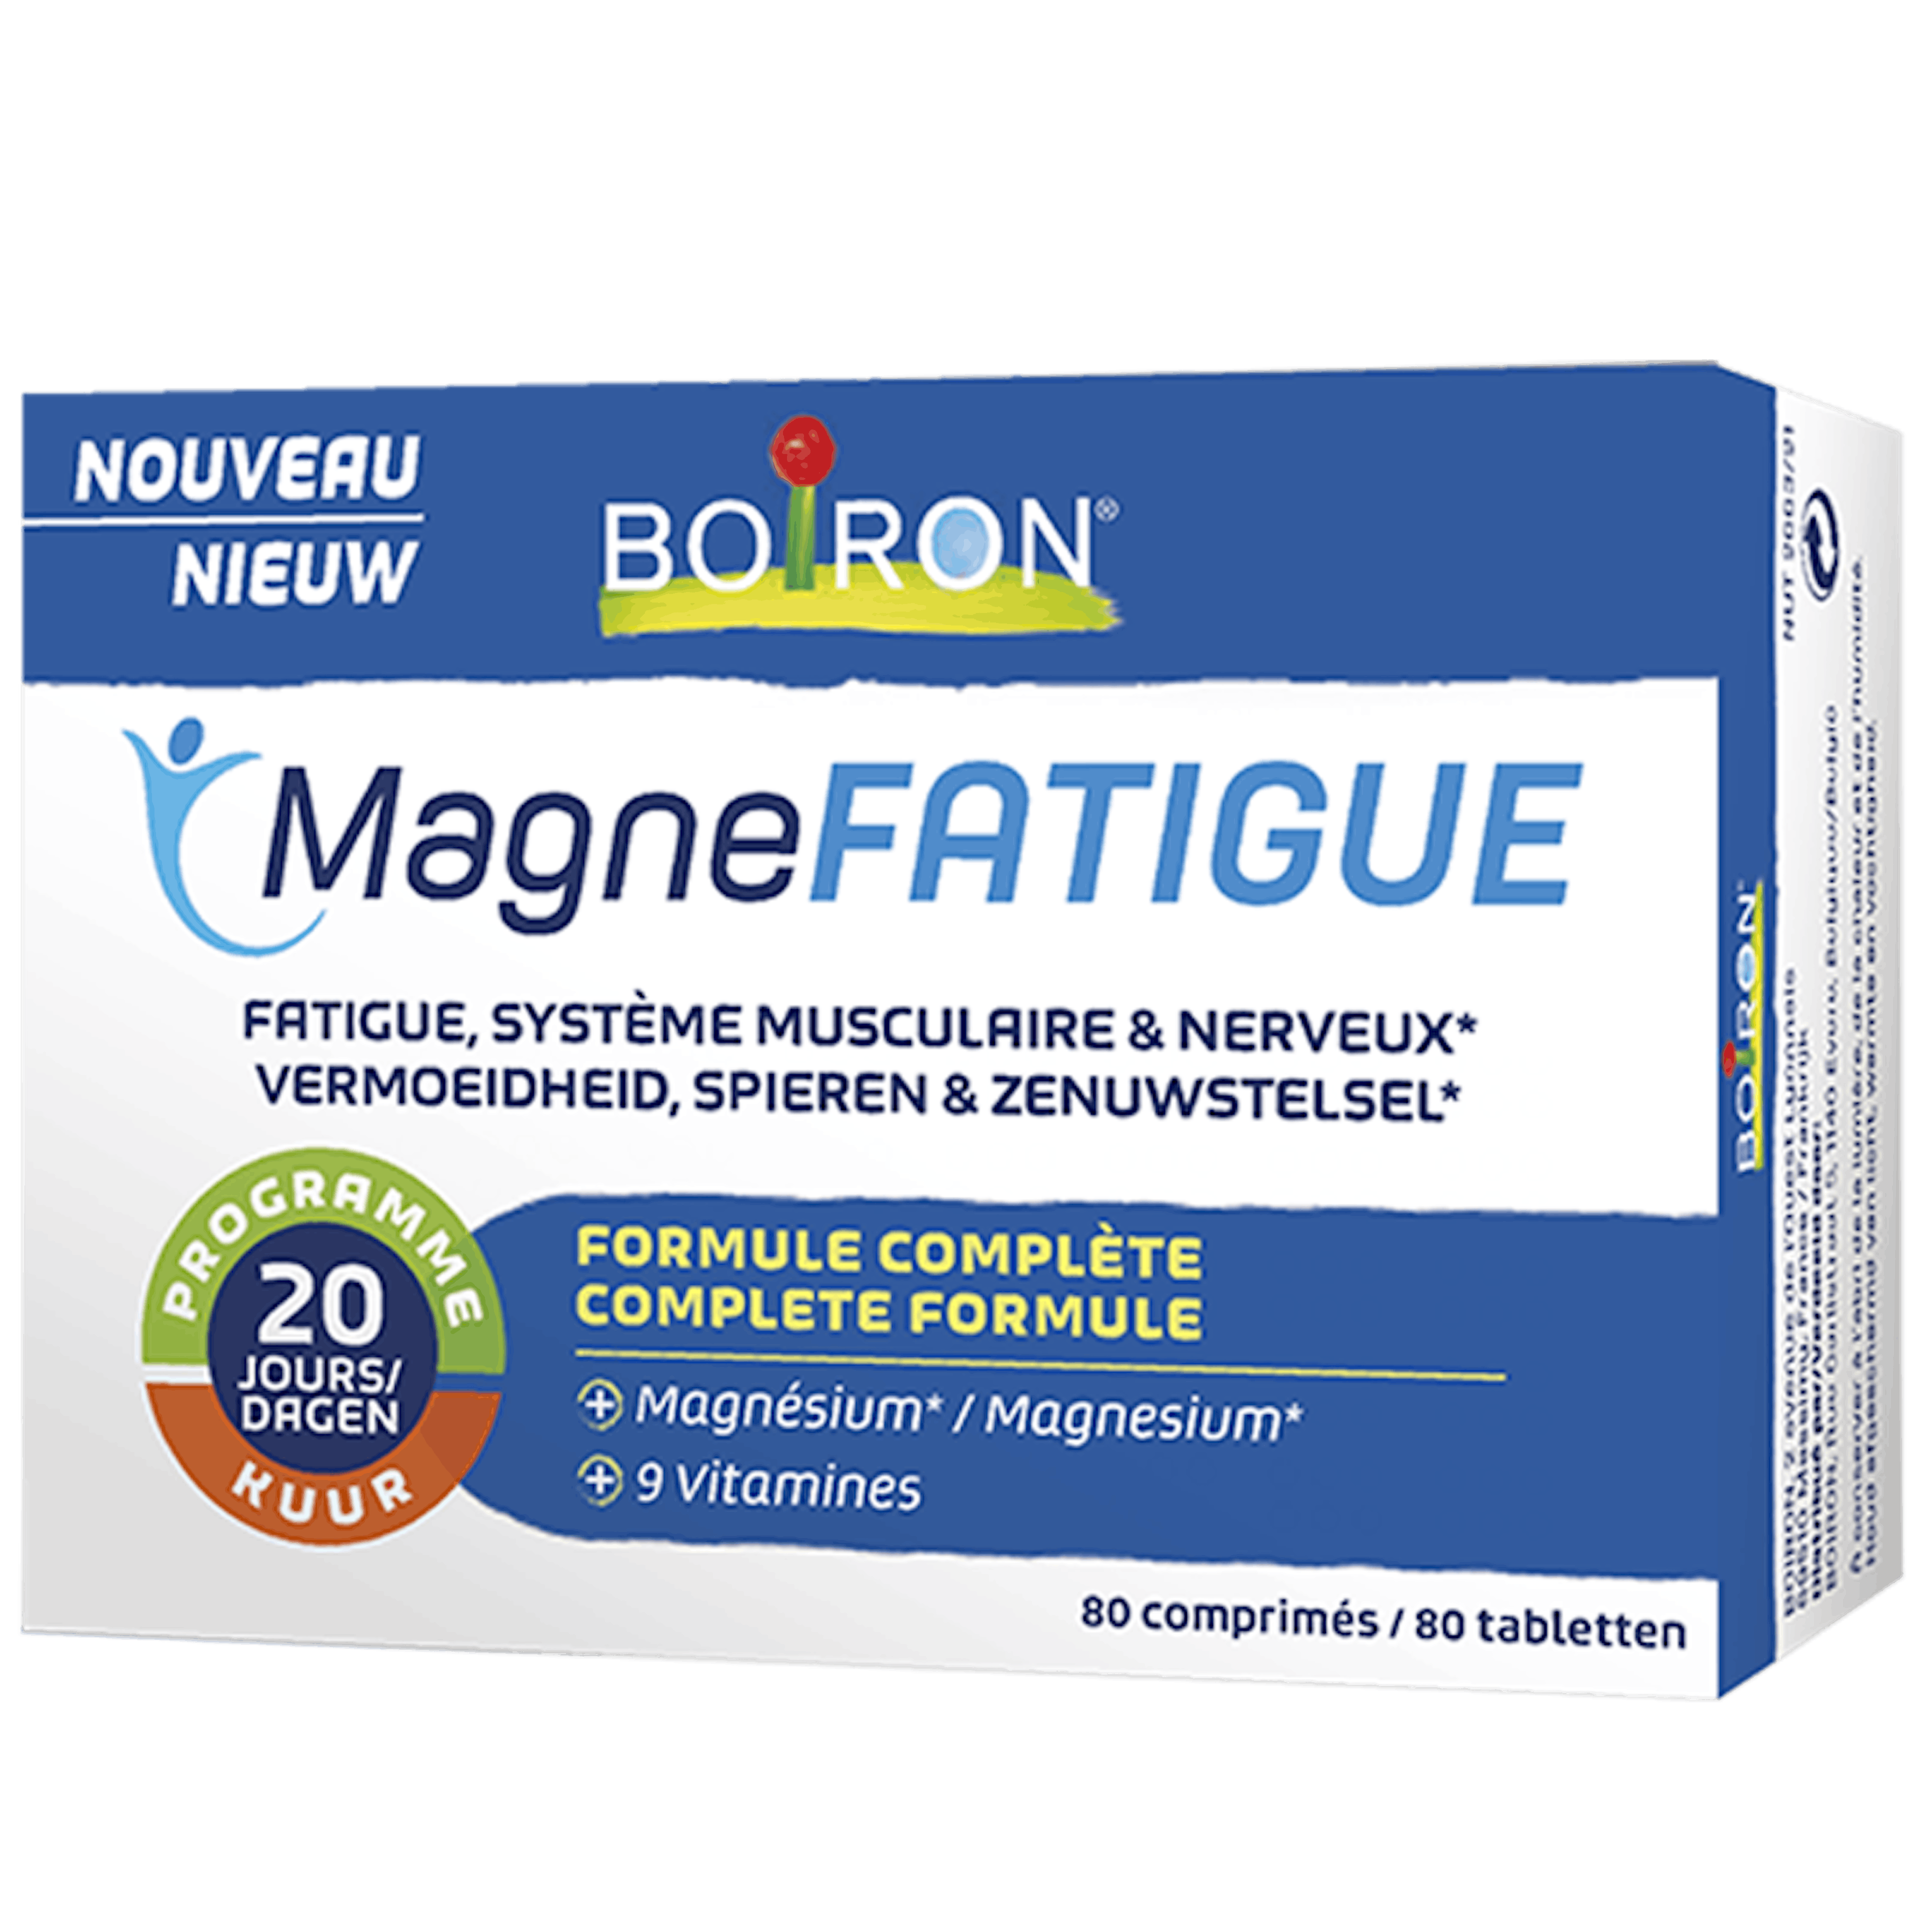 MagneFatigue- Het is magn'ifiek om in vorm te zijn!